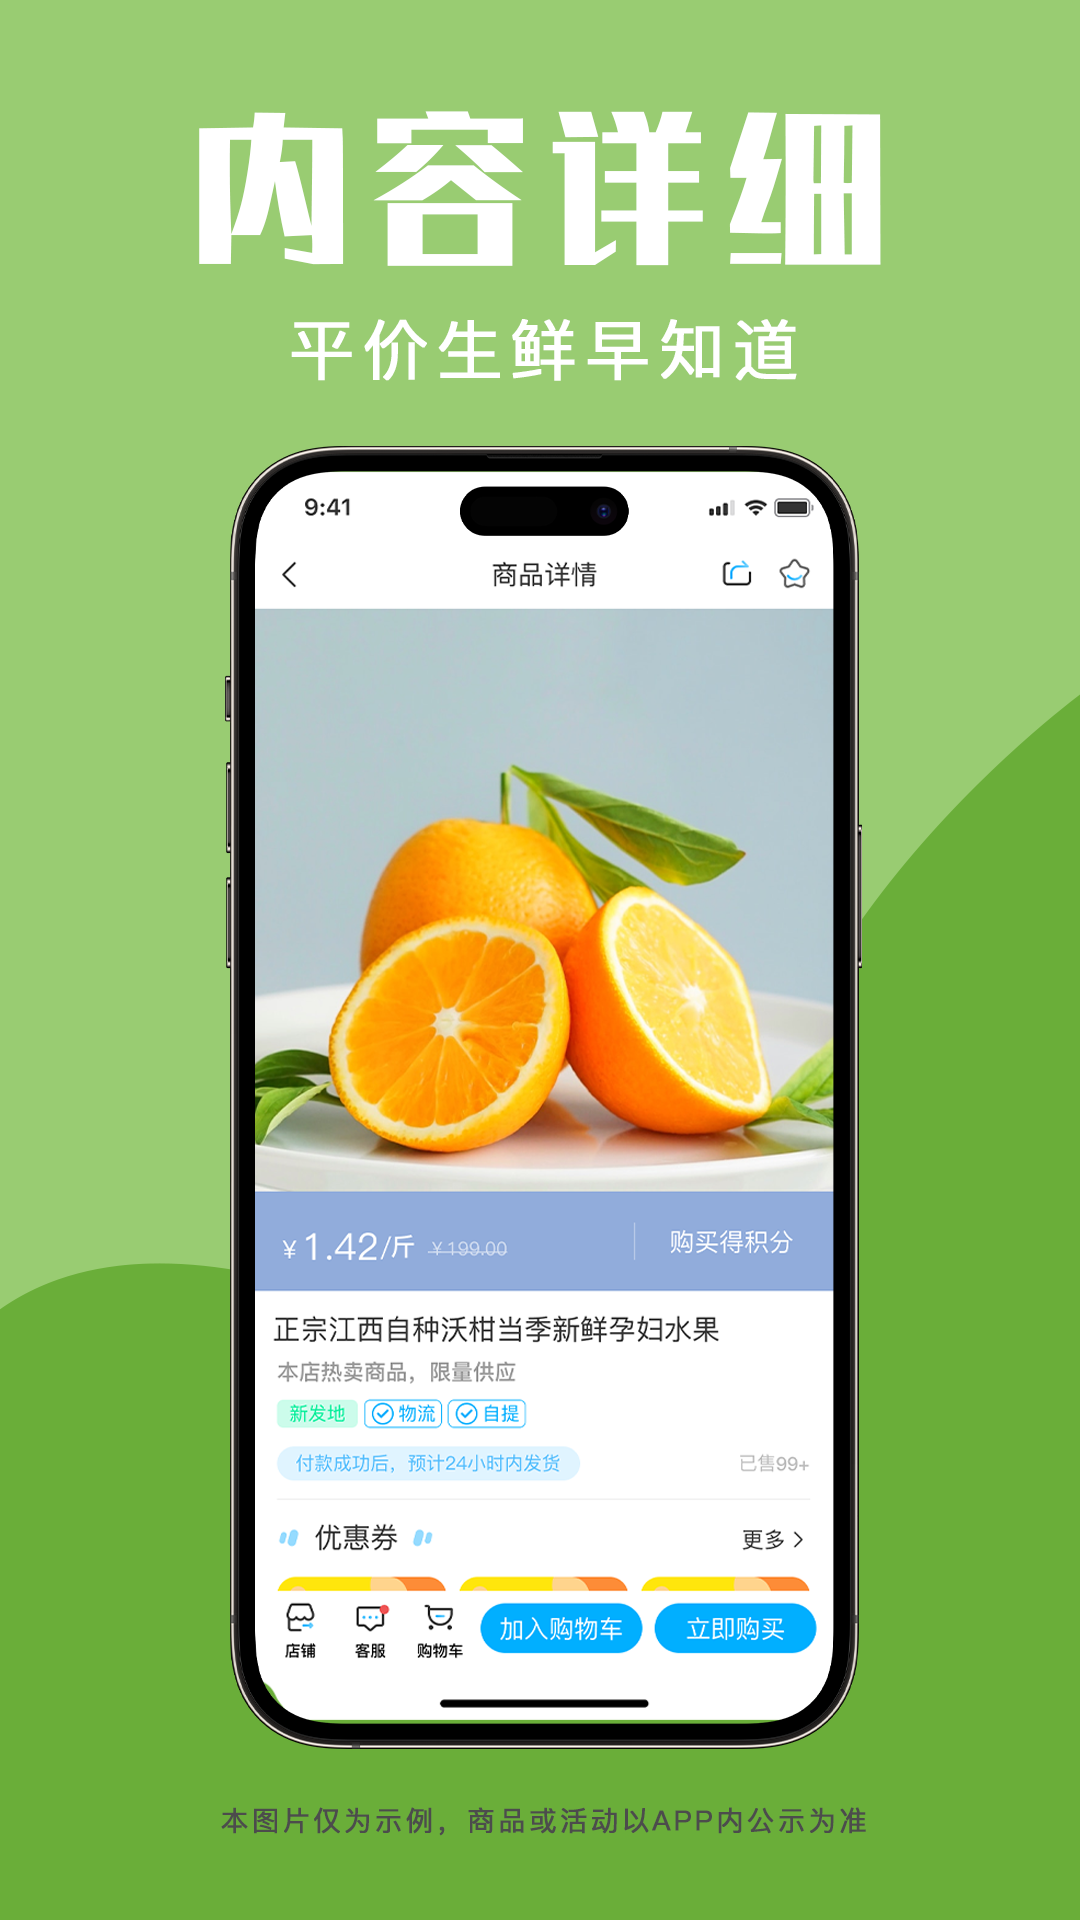 青海新发地商城appv1.0.0